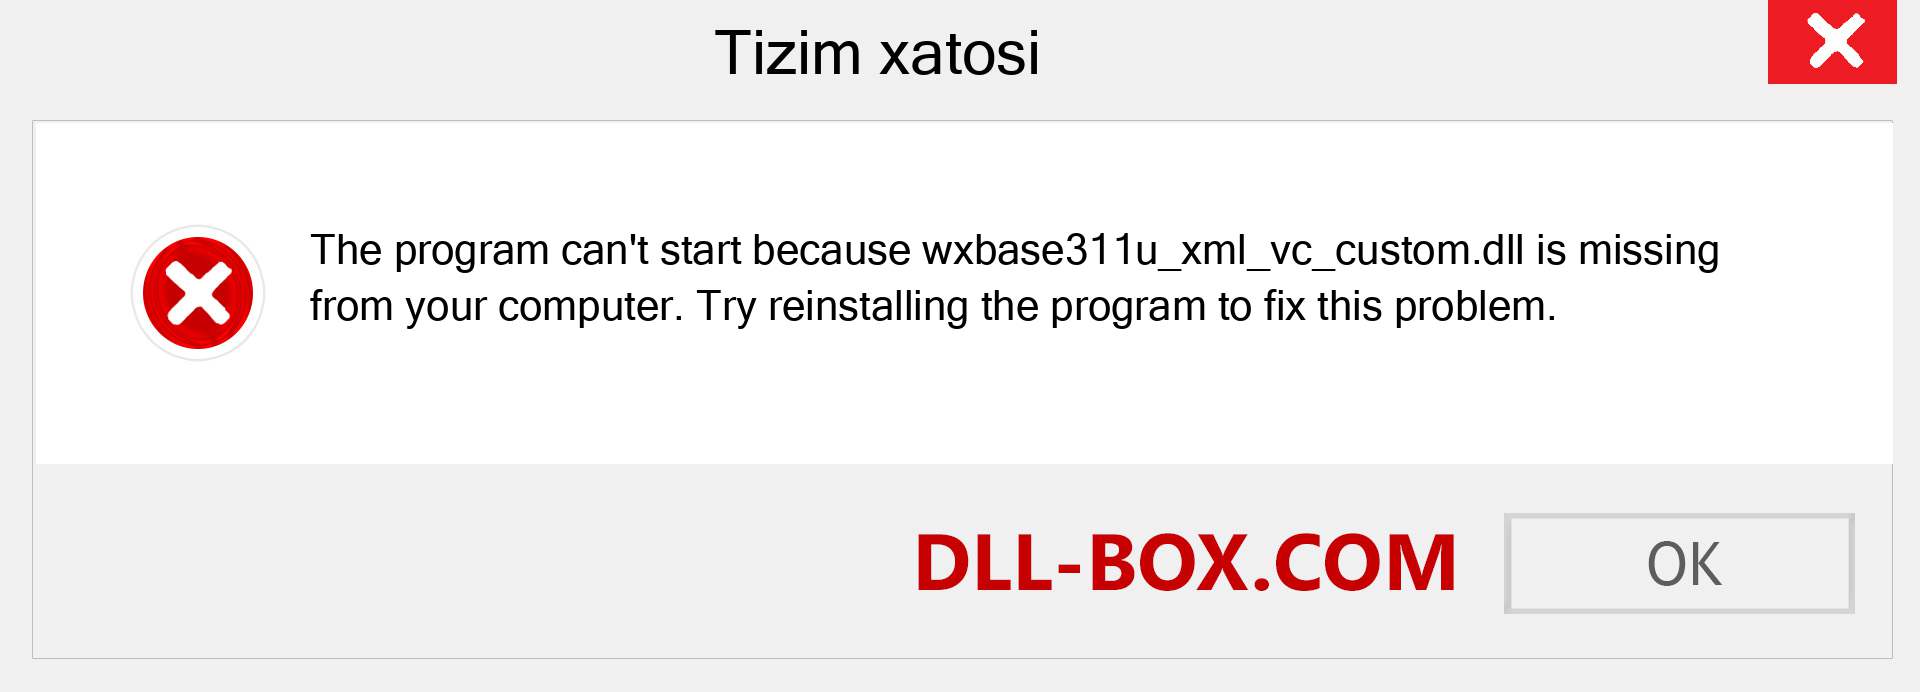 wxbase311u_xml_vc_custom.dll fayli yo'qolganmi?. Windows 7, 8, 10 uchun yuklab olish - Windowsda wxbase311u_xml_vc_custom dll etishmayotgan xatoni tuzating, rasmlar, rasmlar